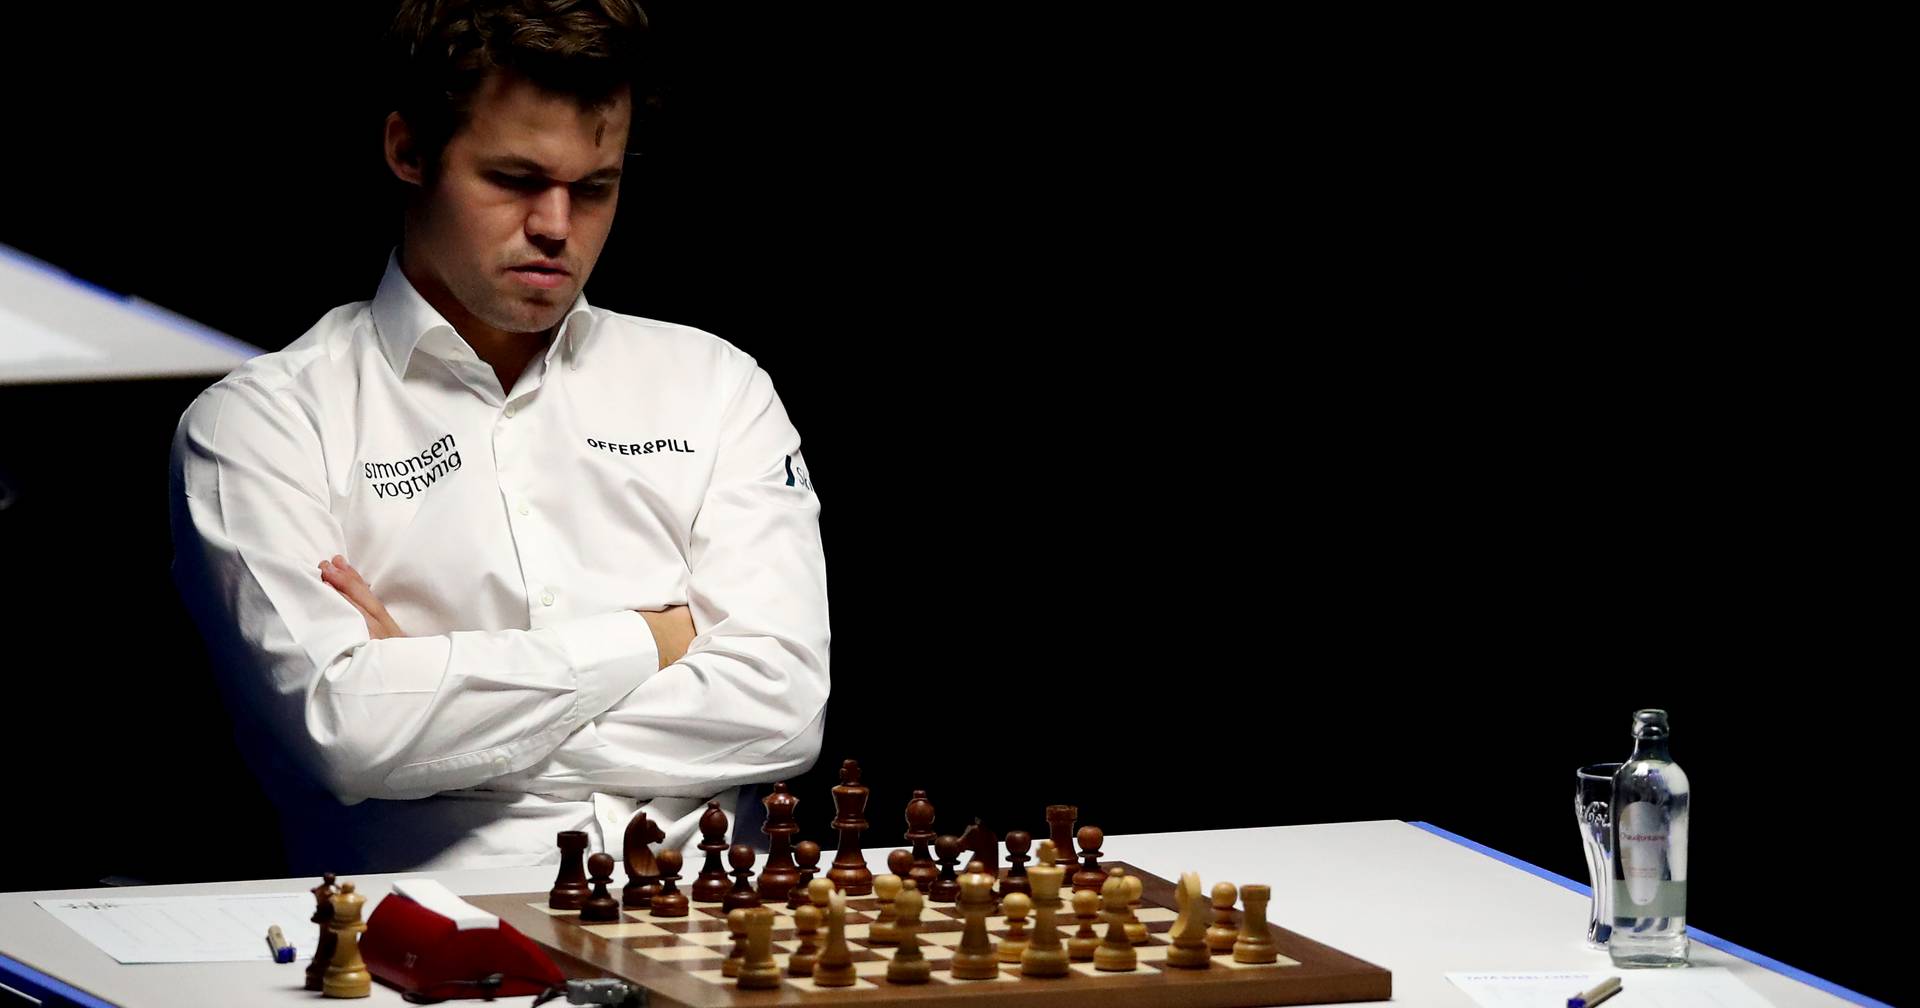 O CARA É MUITO BOM! Magnus Carlsen não dá chance! #shorts #xadrez 